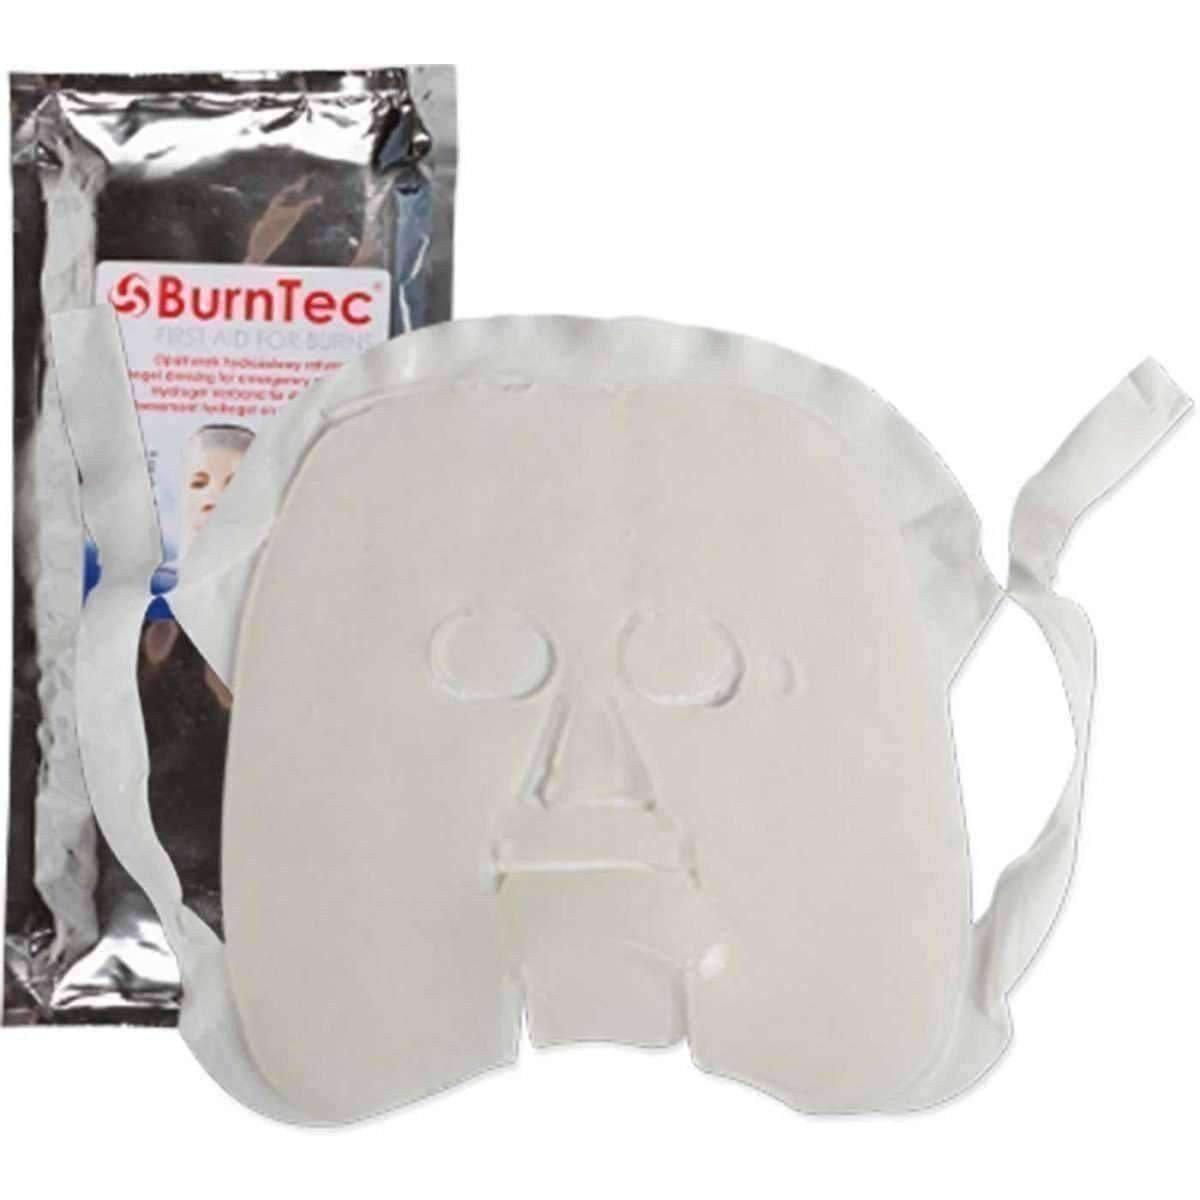 BurnTec Face Mask - Vendor